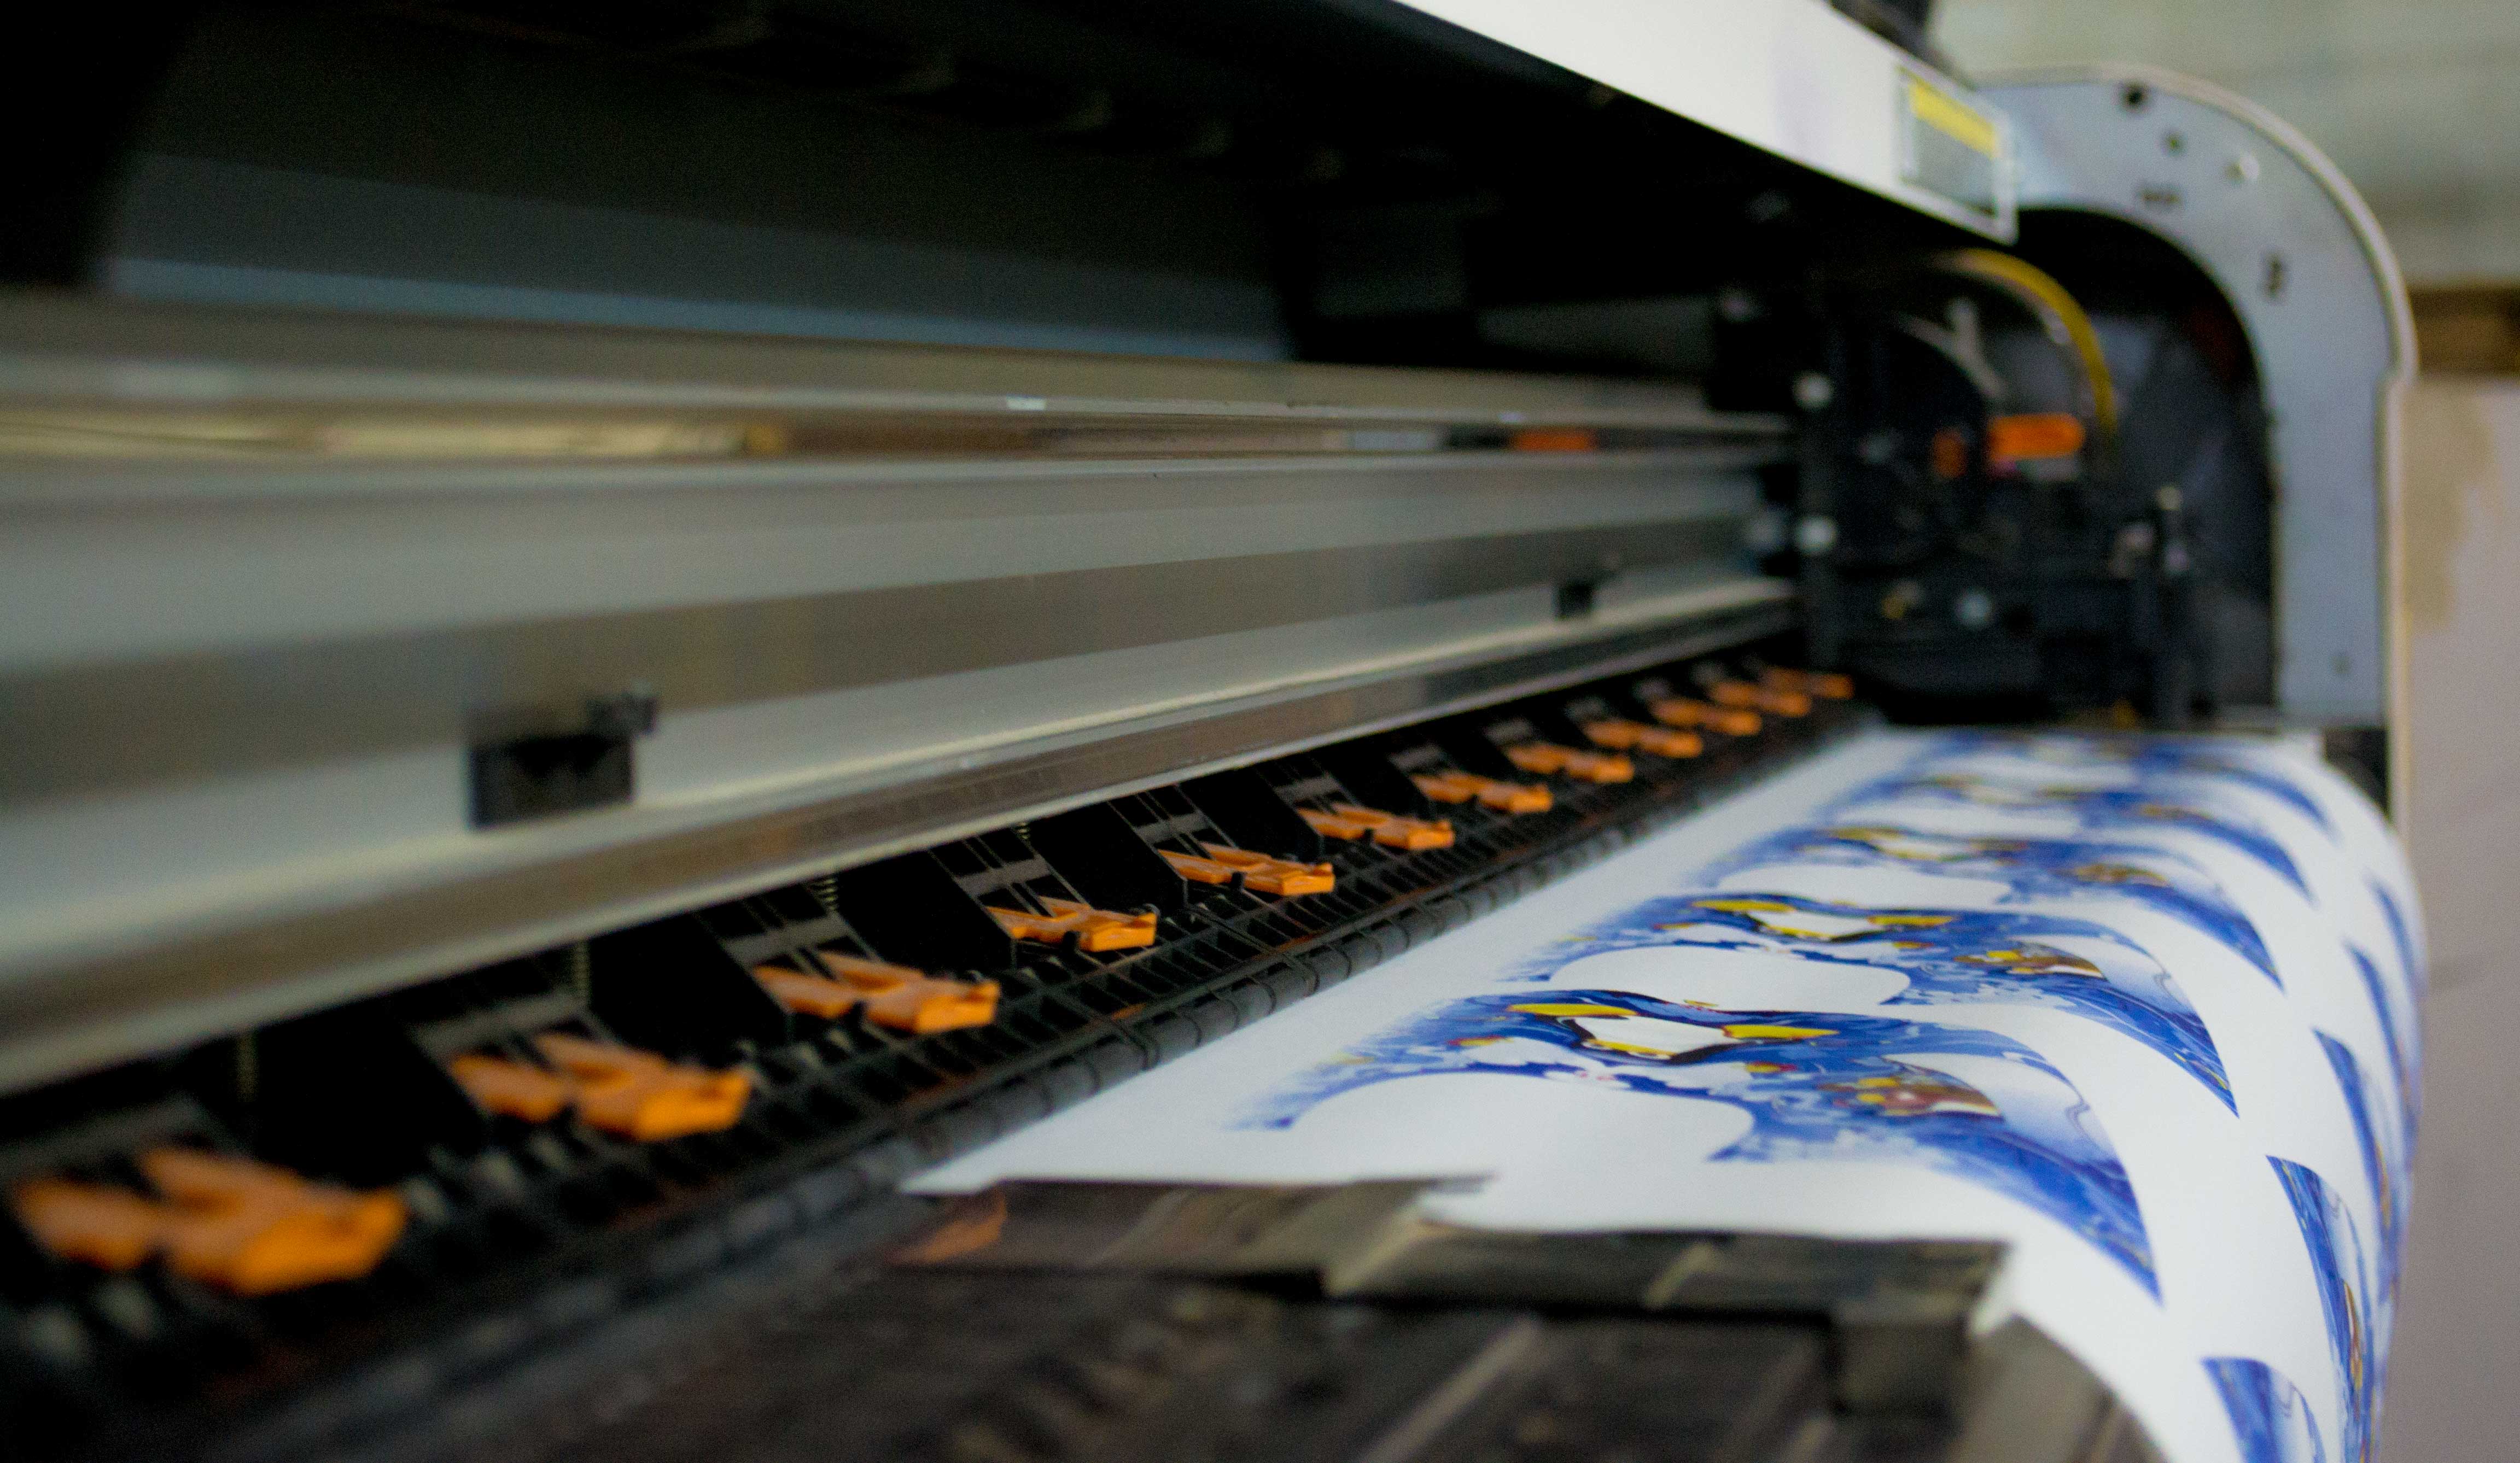 Choosing the best printing method